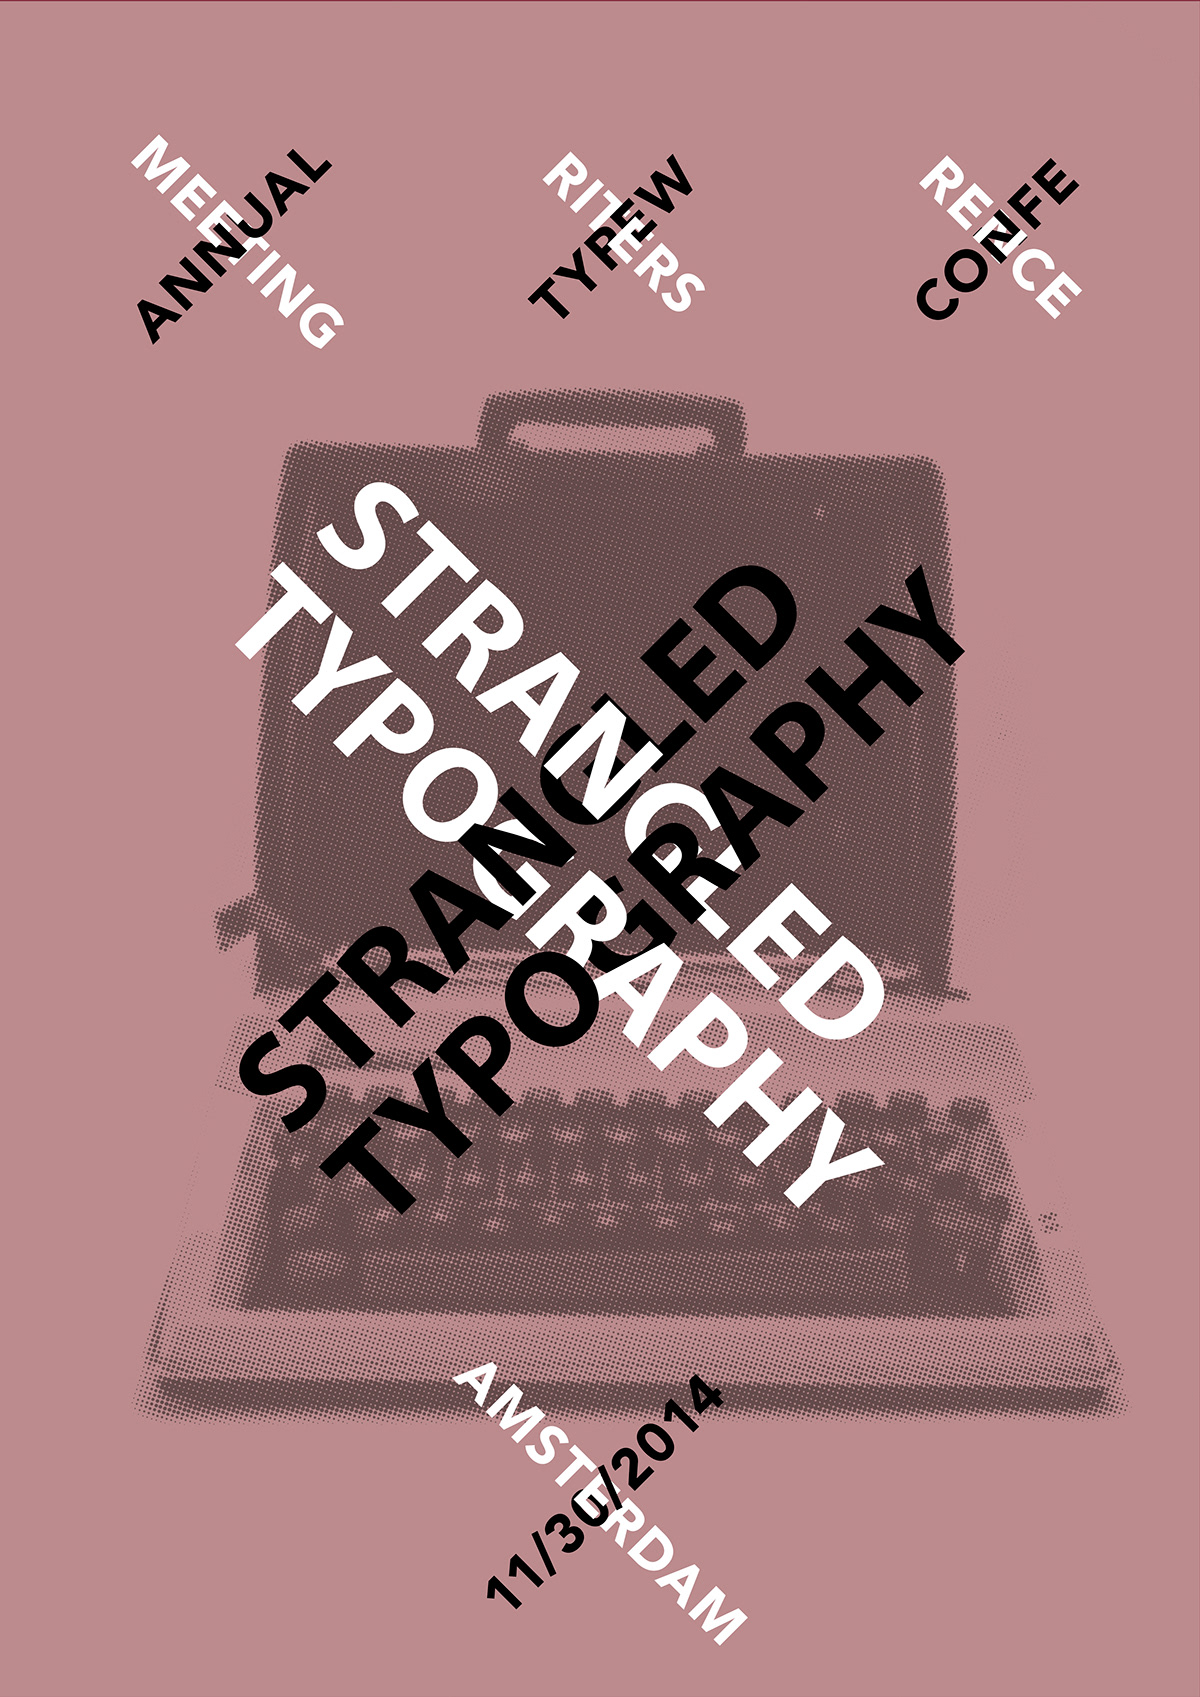 typo type typewriter design poster